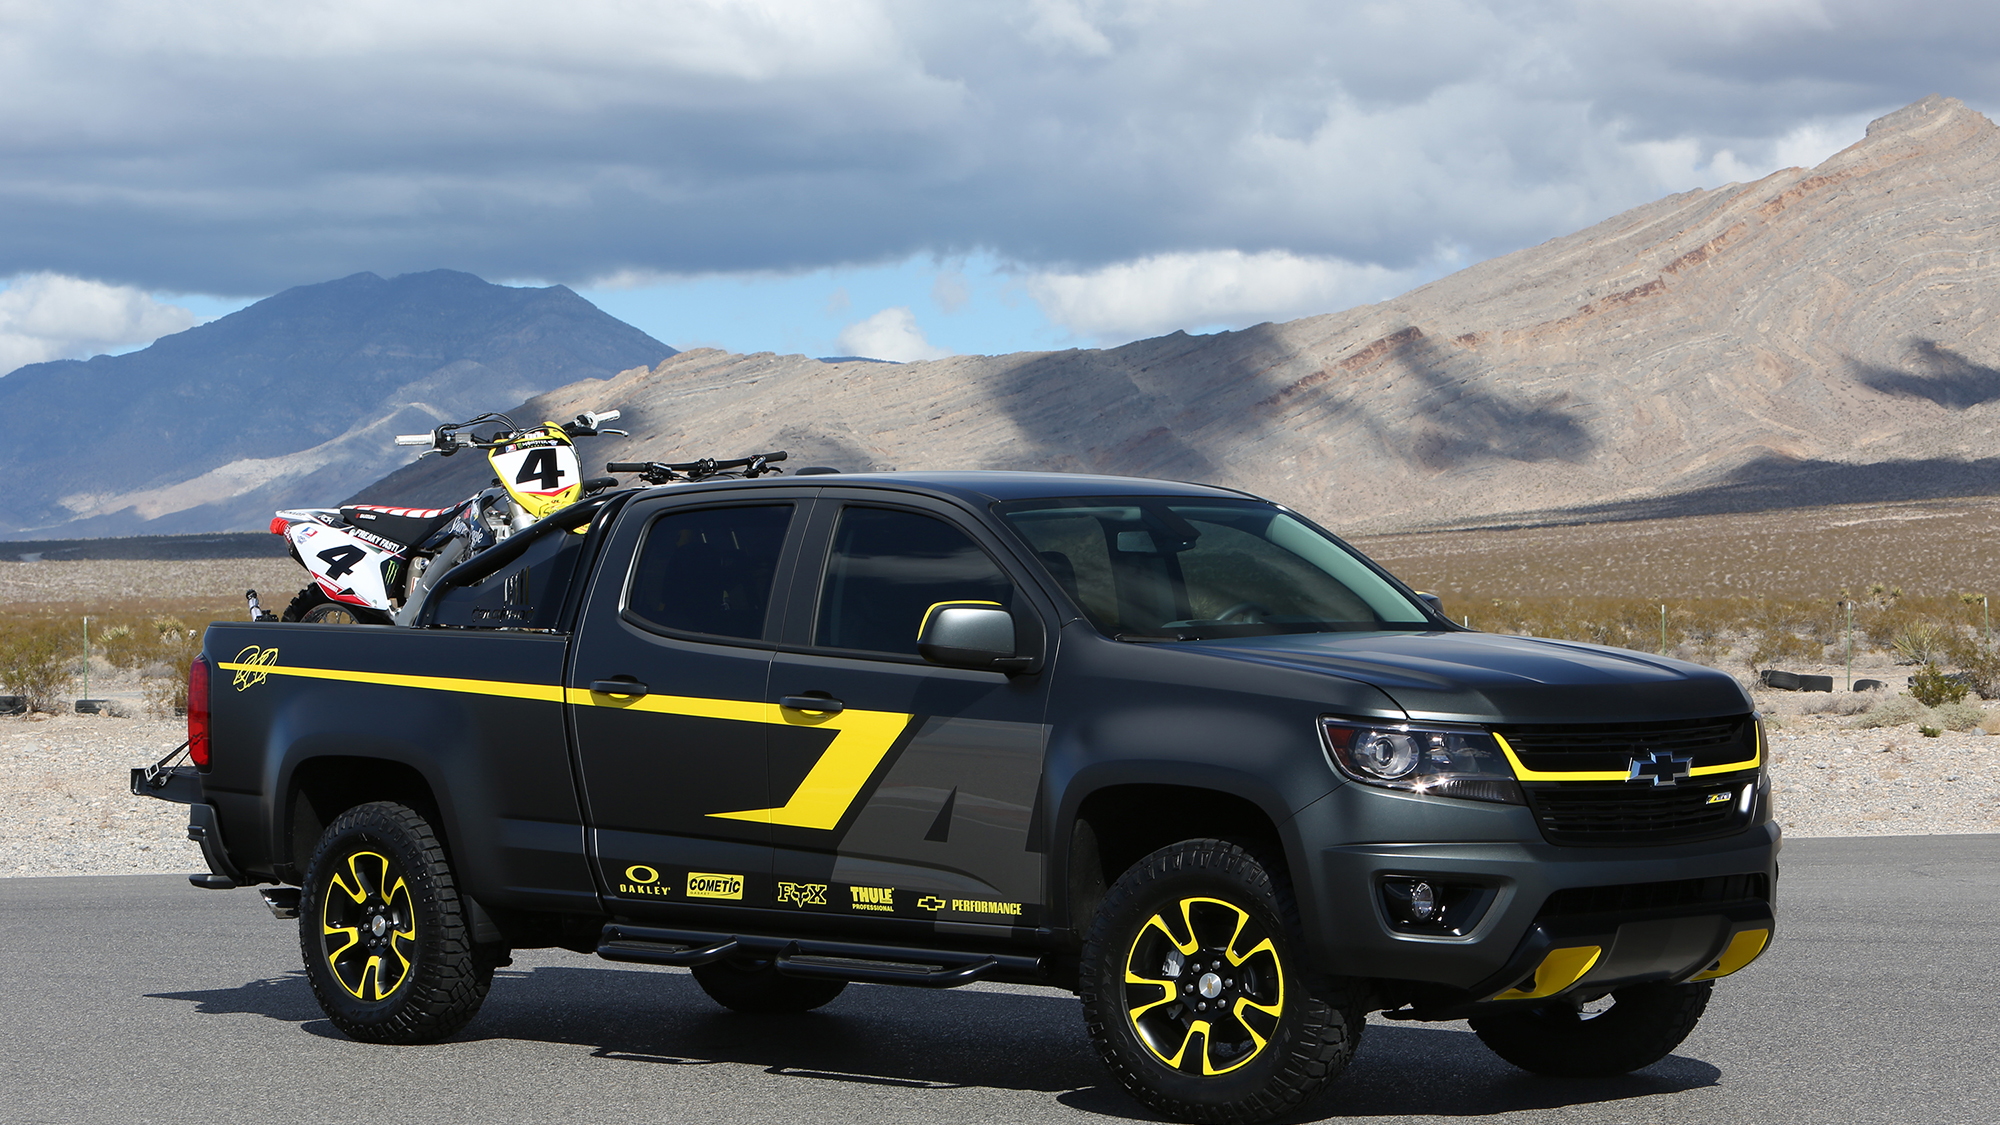 Chevy Colorado Performance Concept, 2014 SEMA show